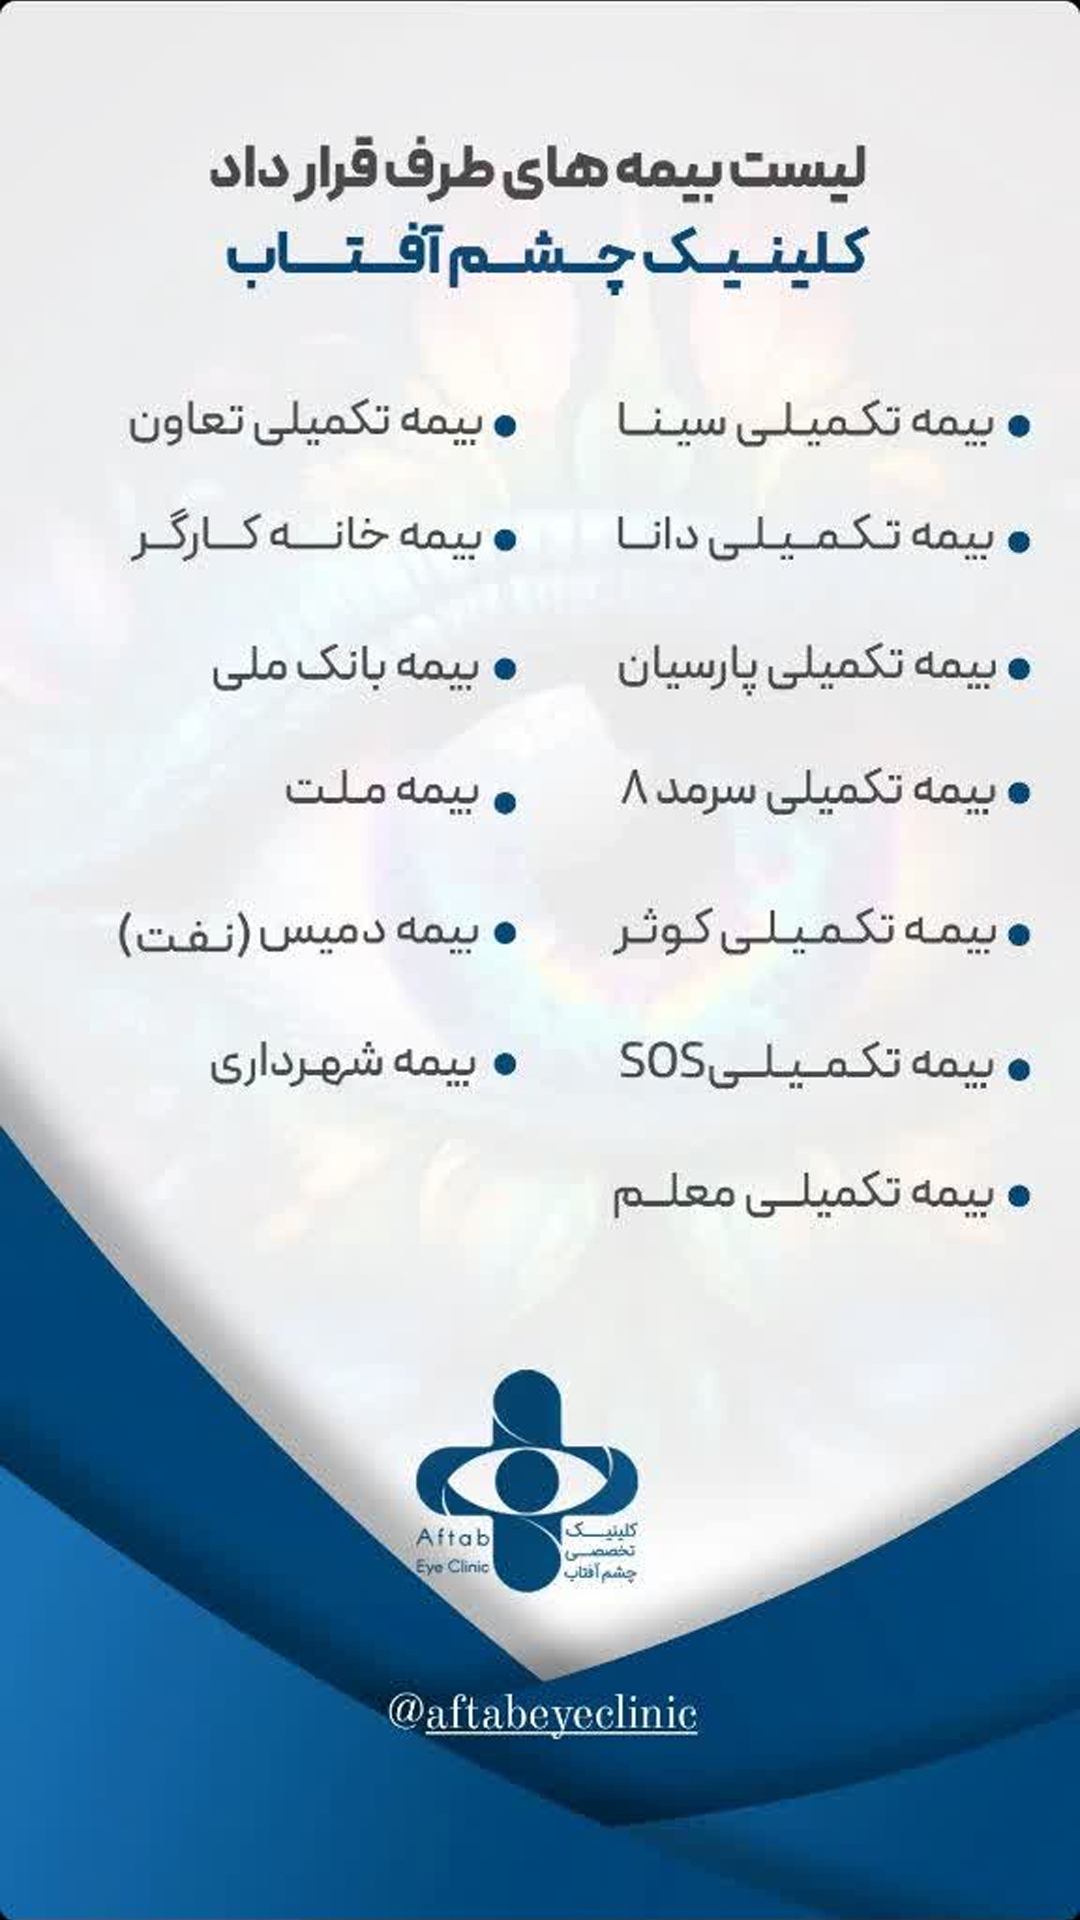 بیمه های طرف قرارداد چشم پزشکی در اصفهان 